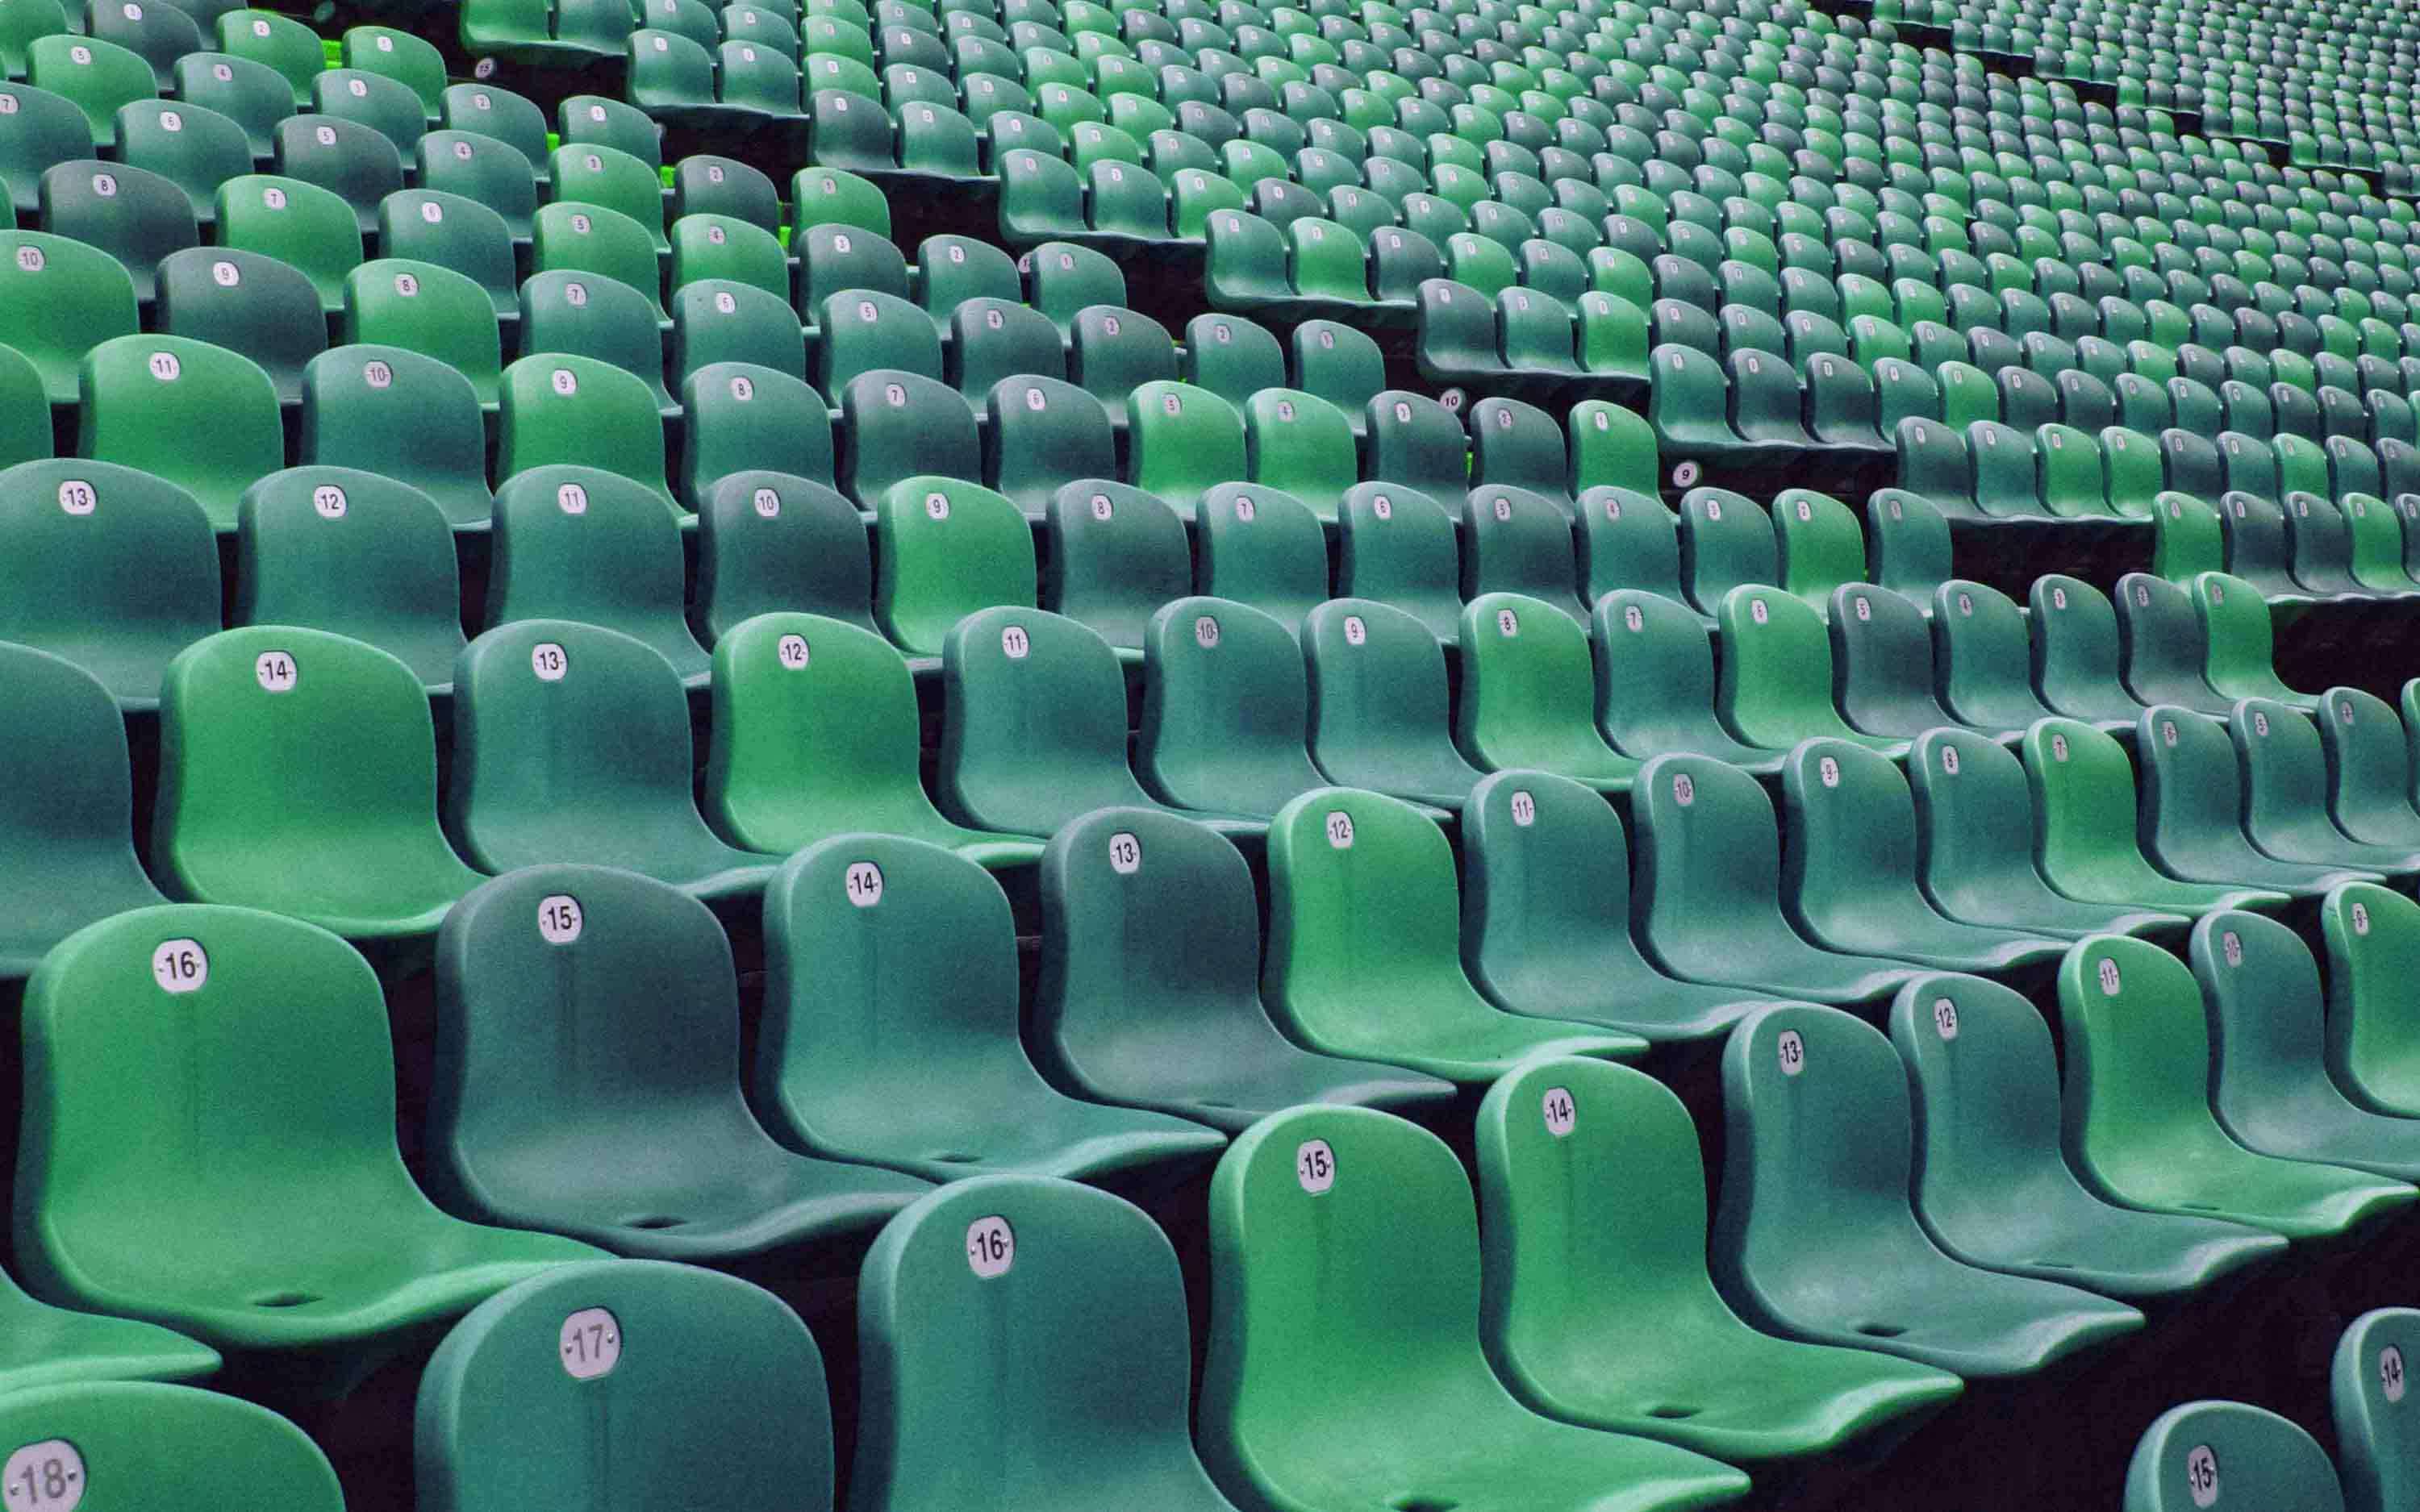 leAD: Stadium seats